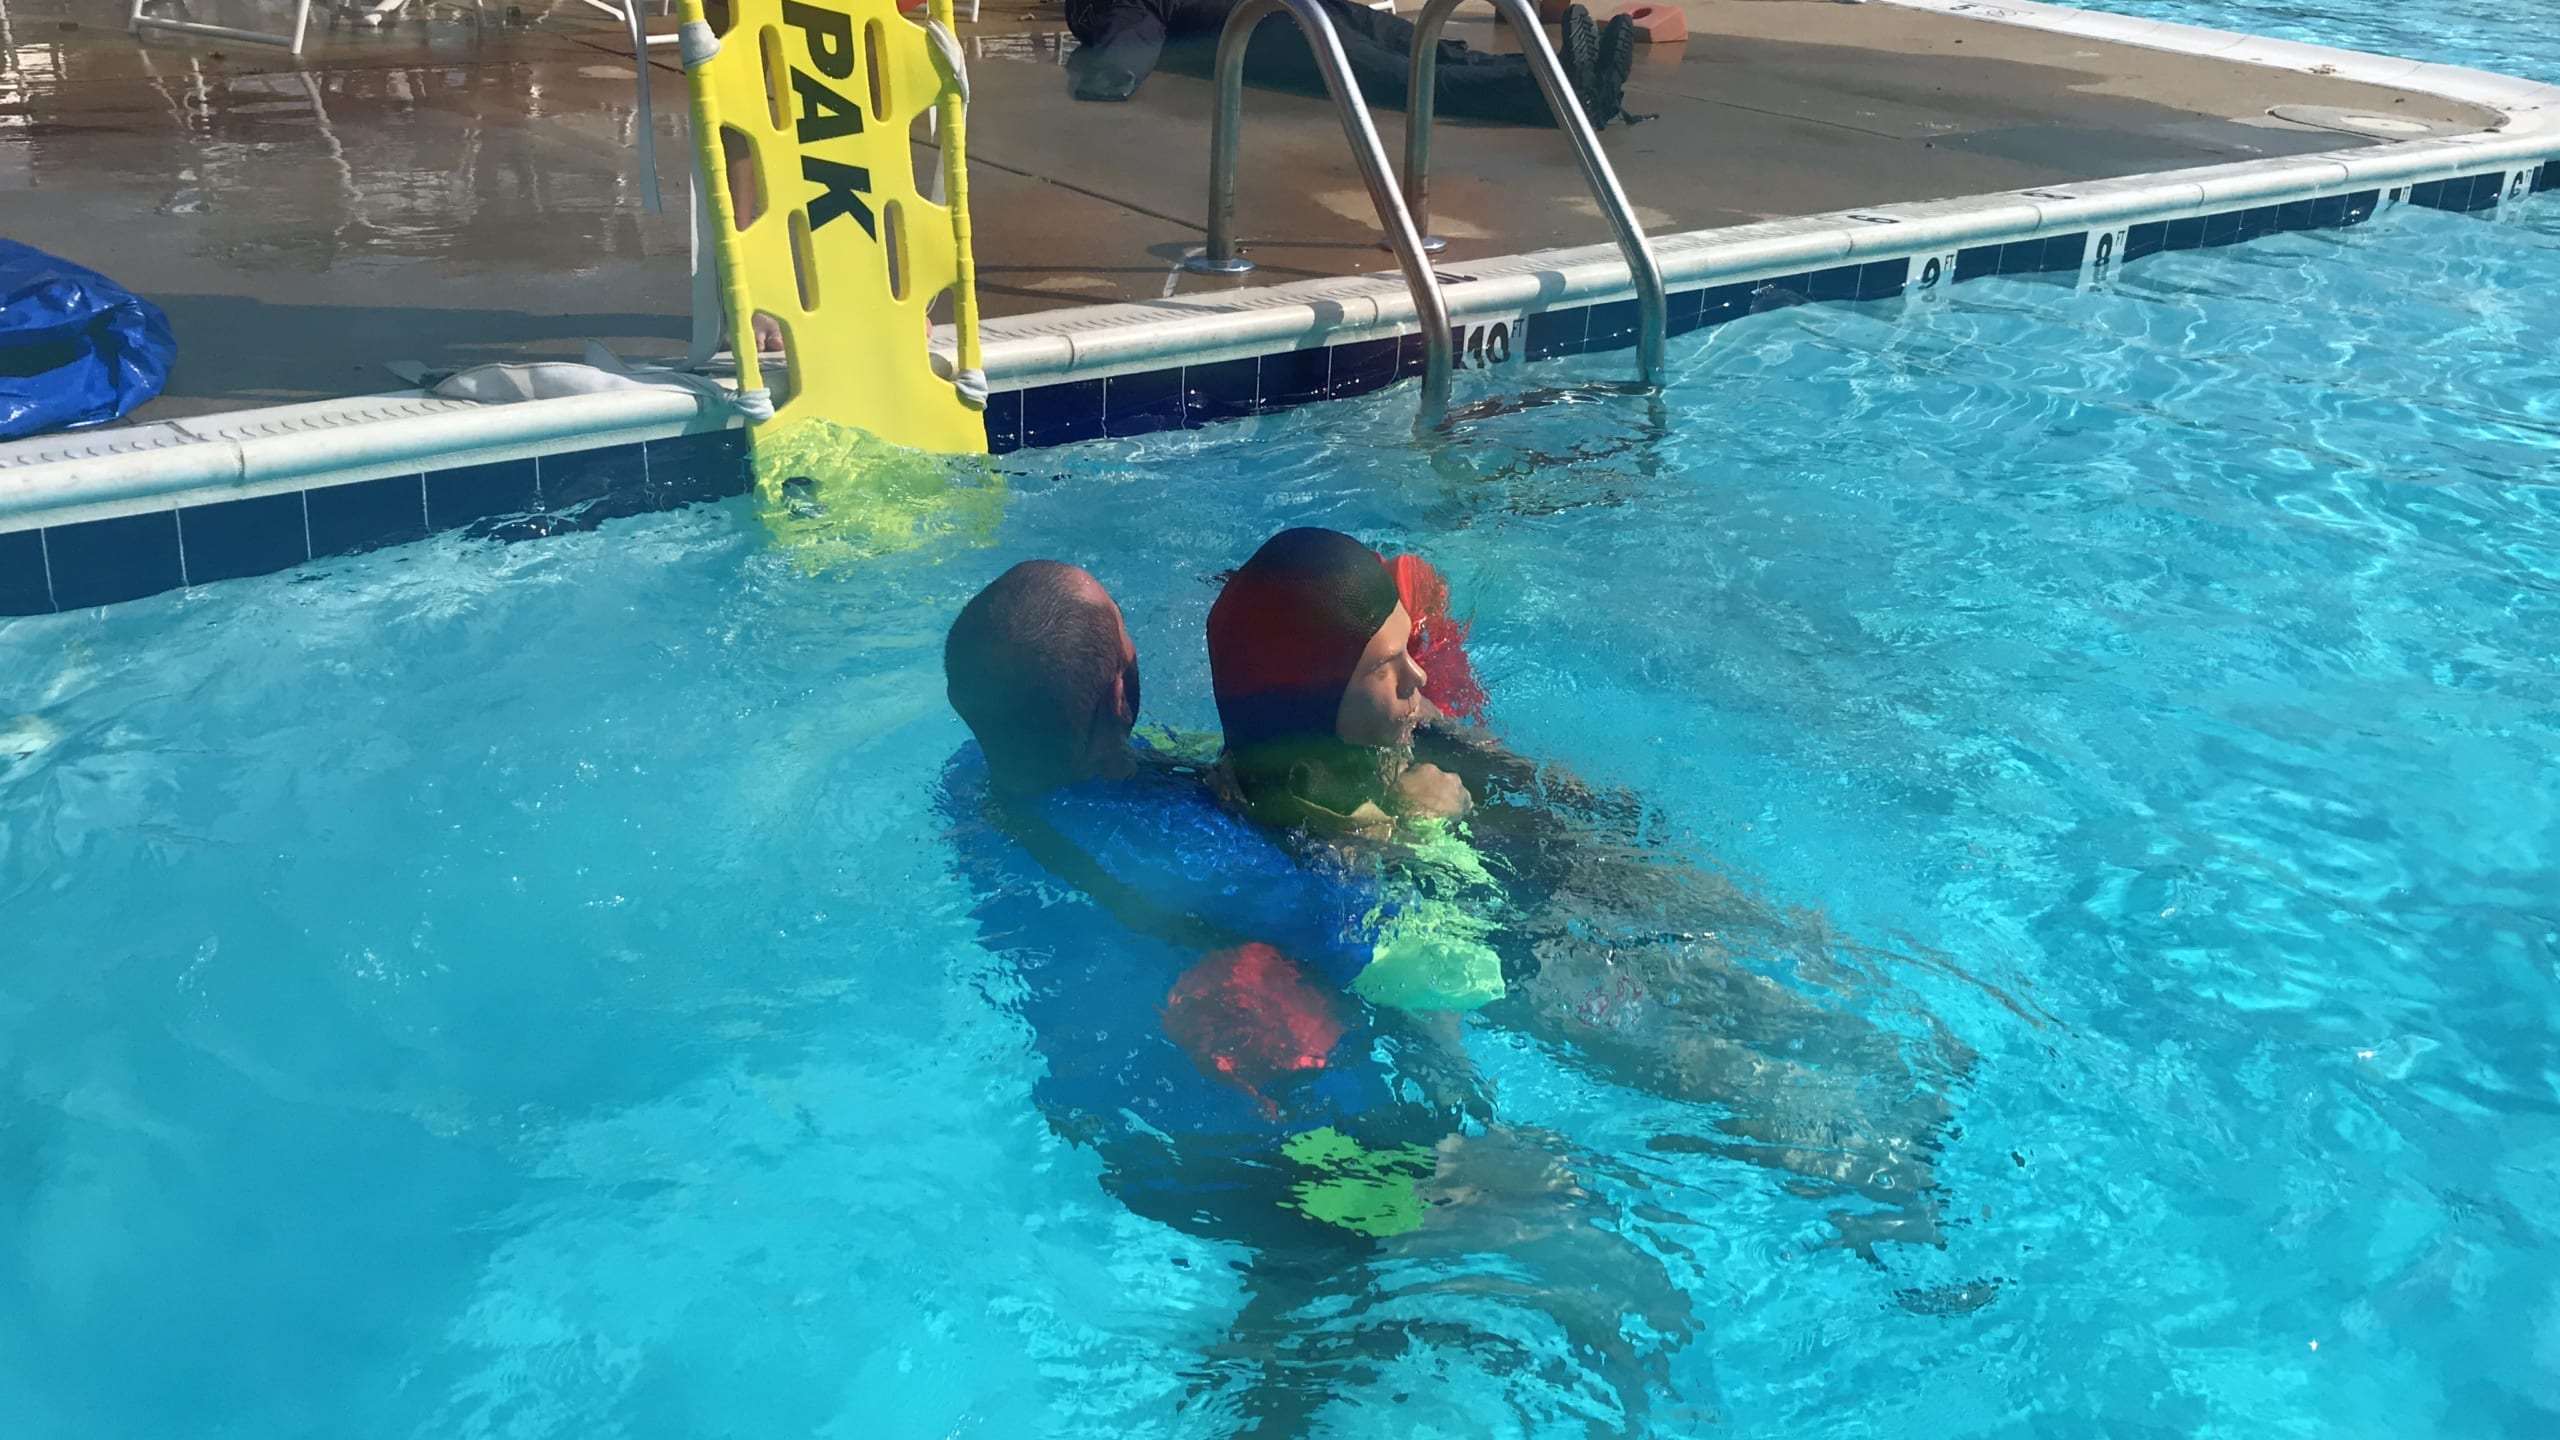 Lifeguard Trainings Have Resumed High Sierra Pools